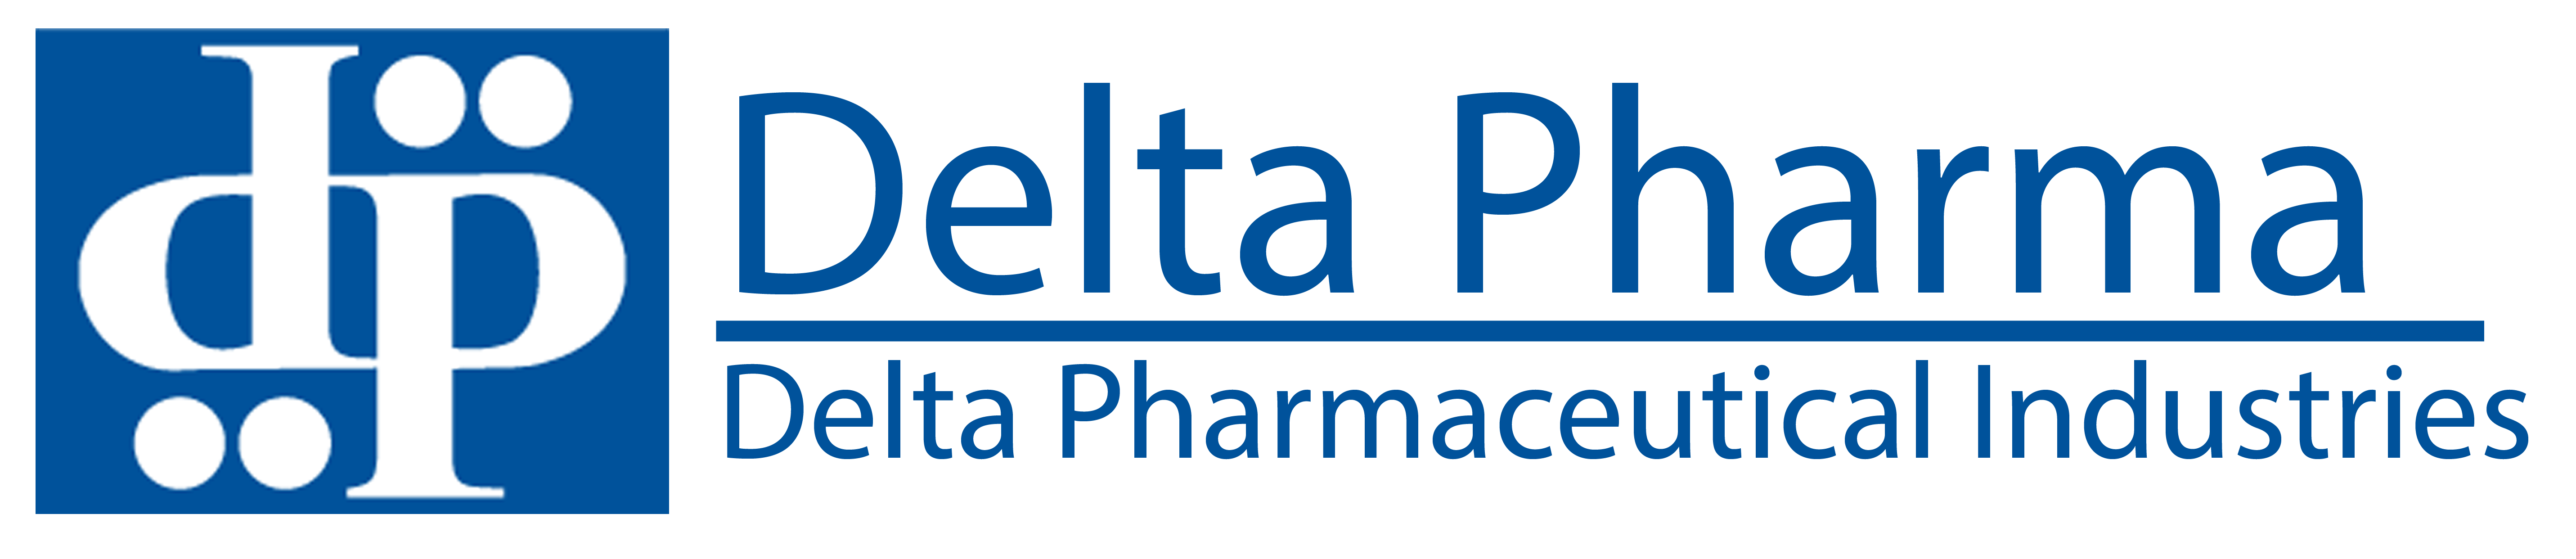 Delta Pharma